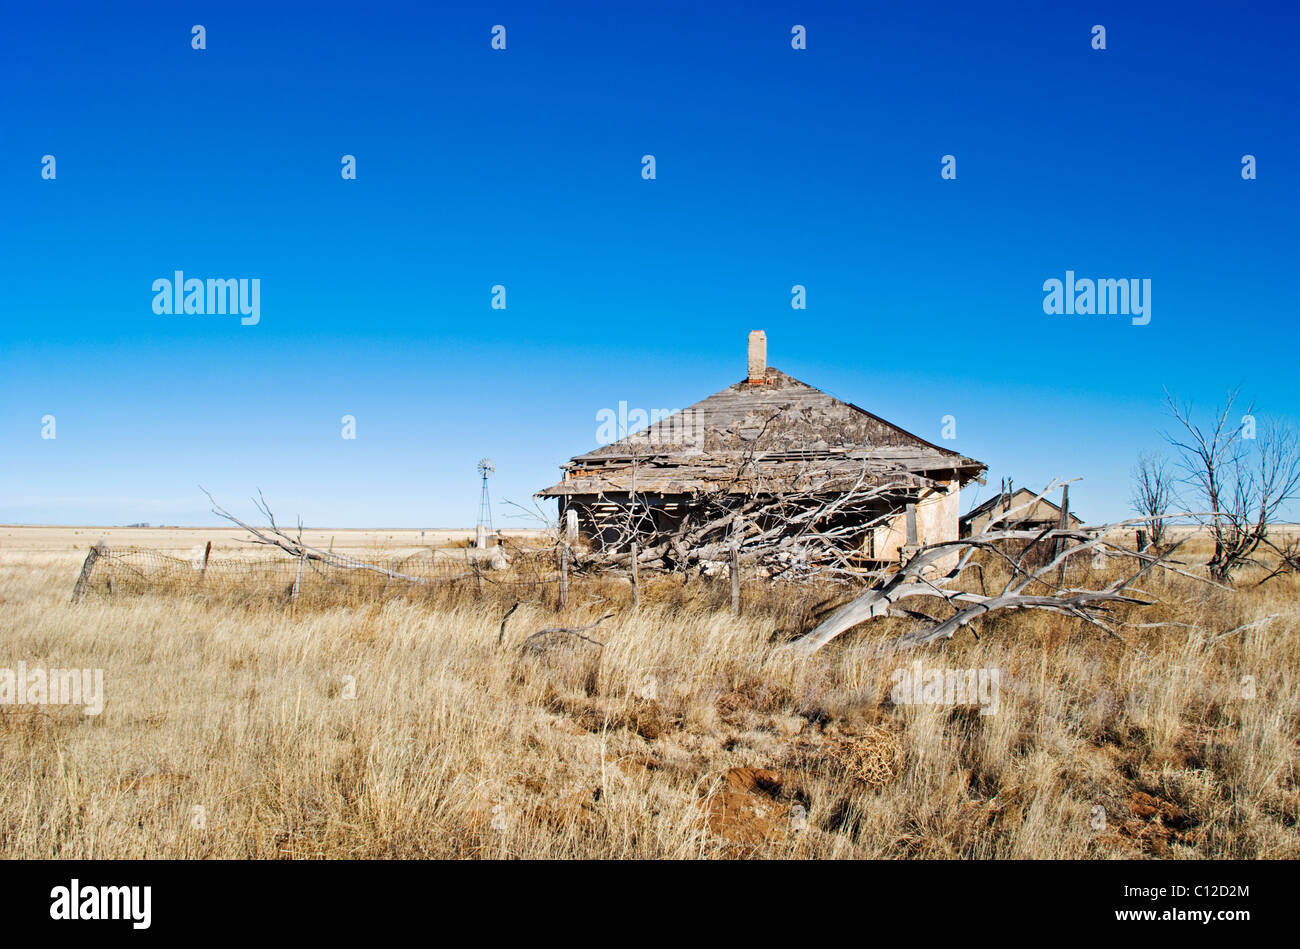 Eine Ferne Windmühle und verlassenen Gehöft erinnert an eine lebendige Vergangenheit in diesem nordöstlichen Teil von New Mexico. Stockfoto